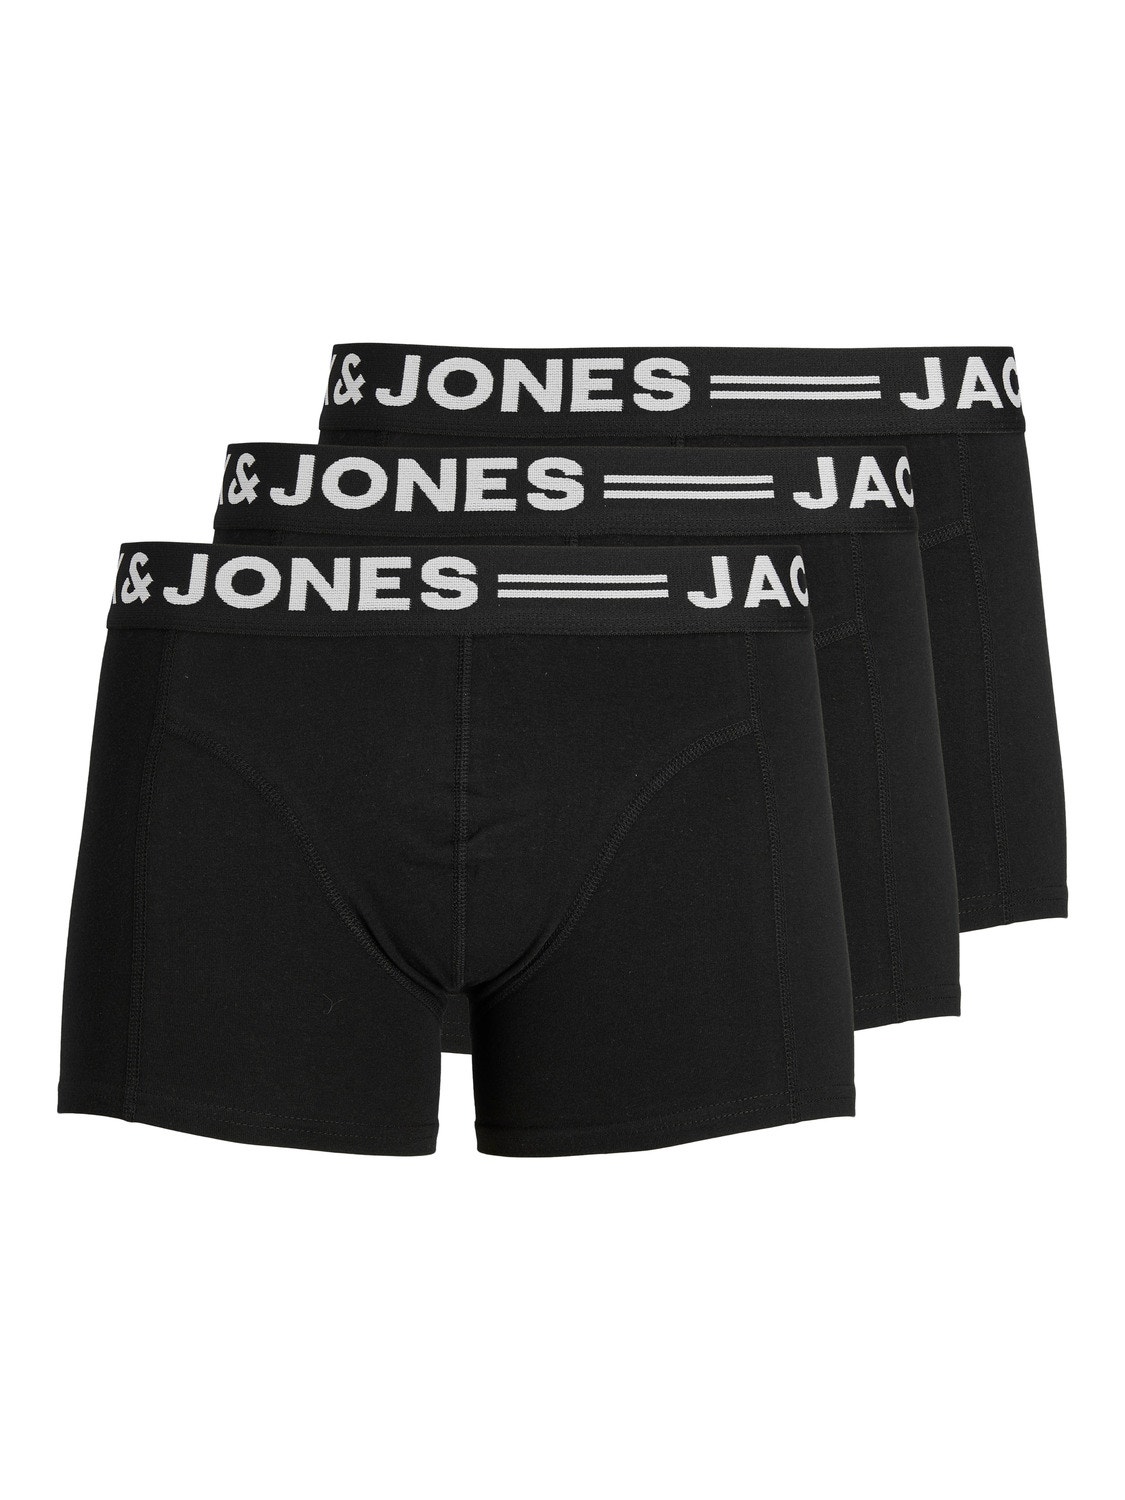 Jack & Jones 3-balení Trenýrky -Black - 12081832